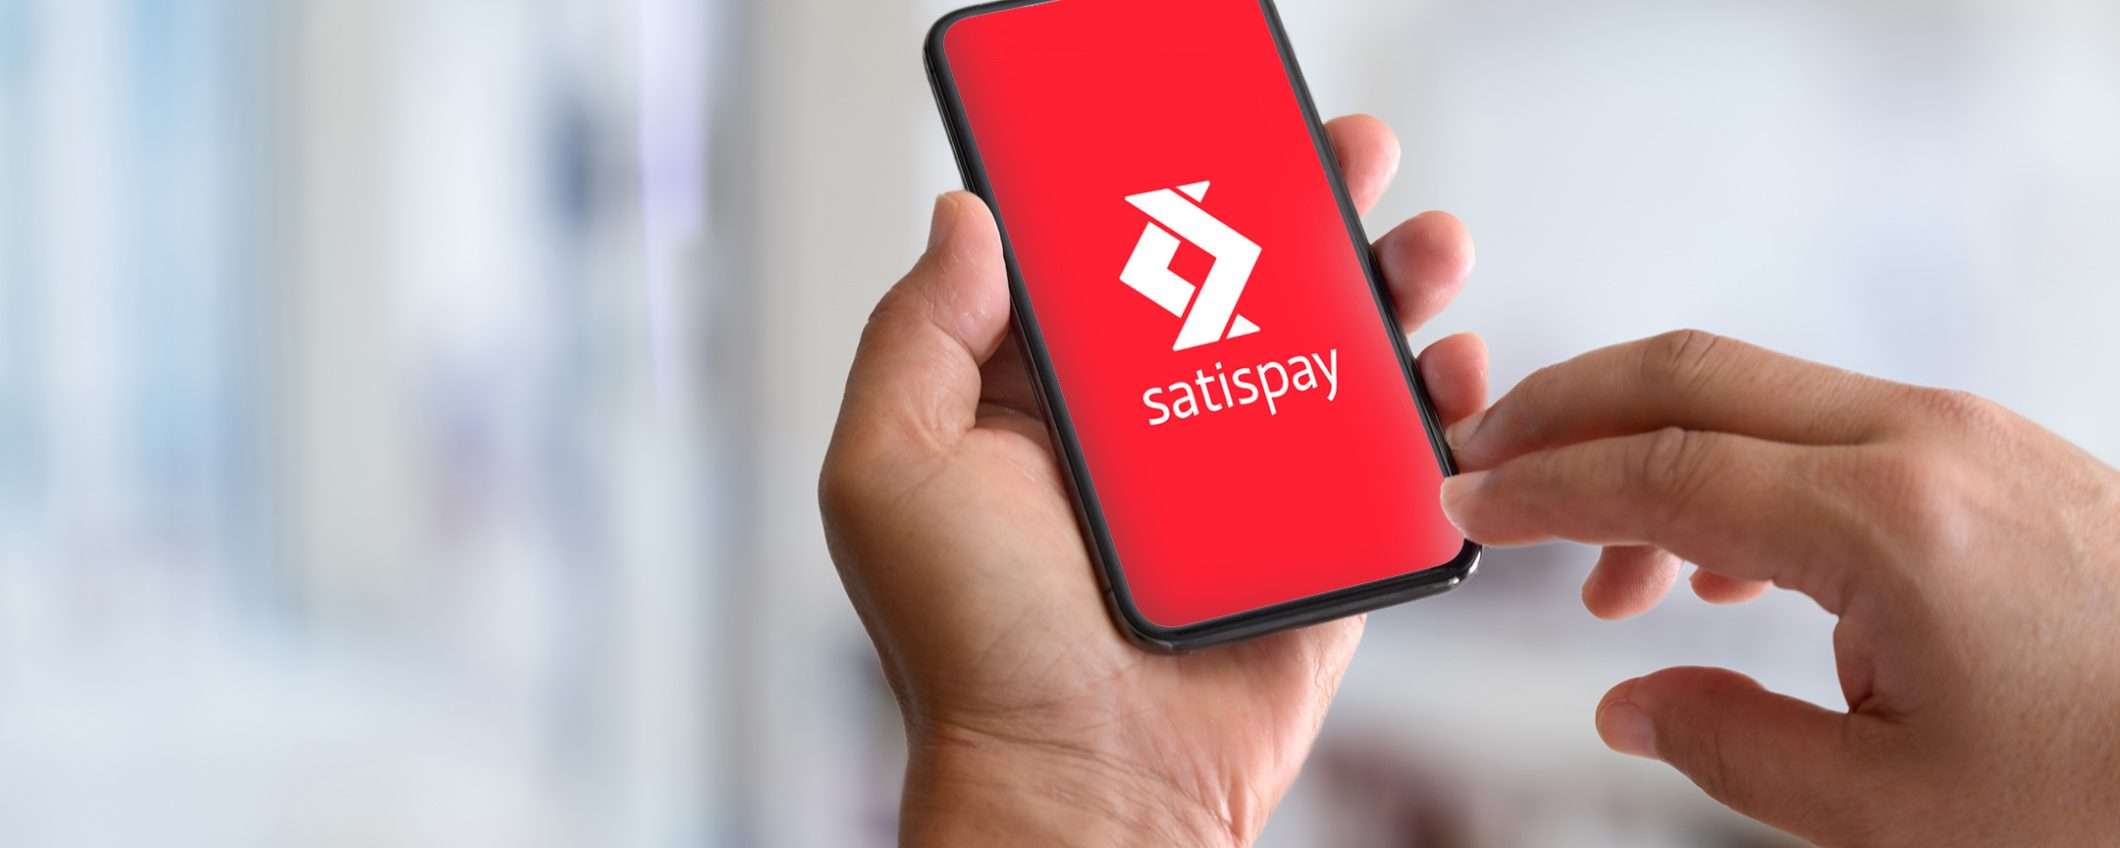 Satispay è davvero l’app ideale per il cashback?